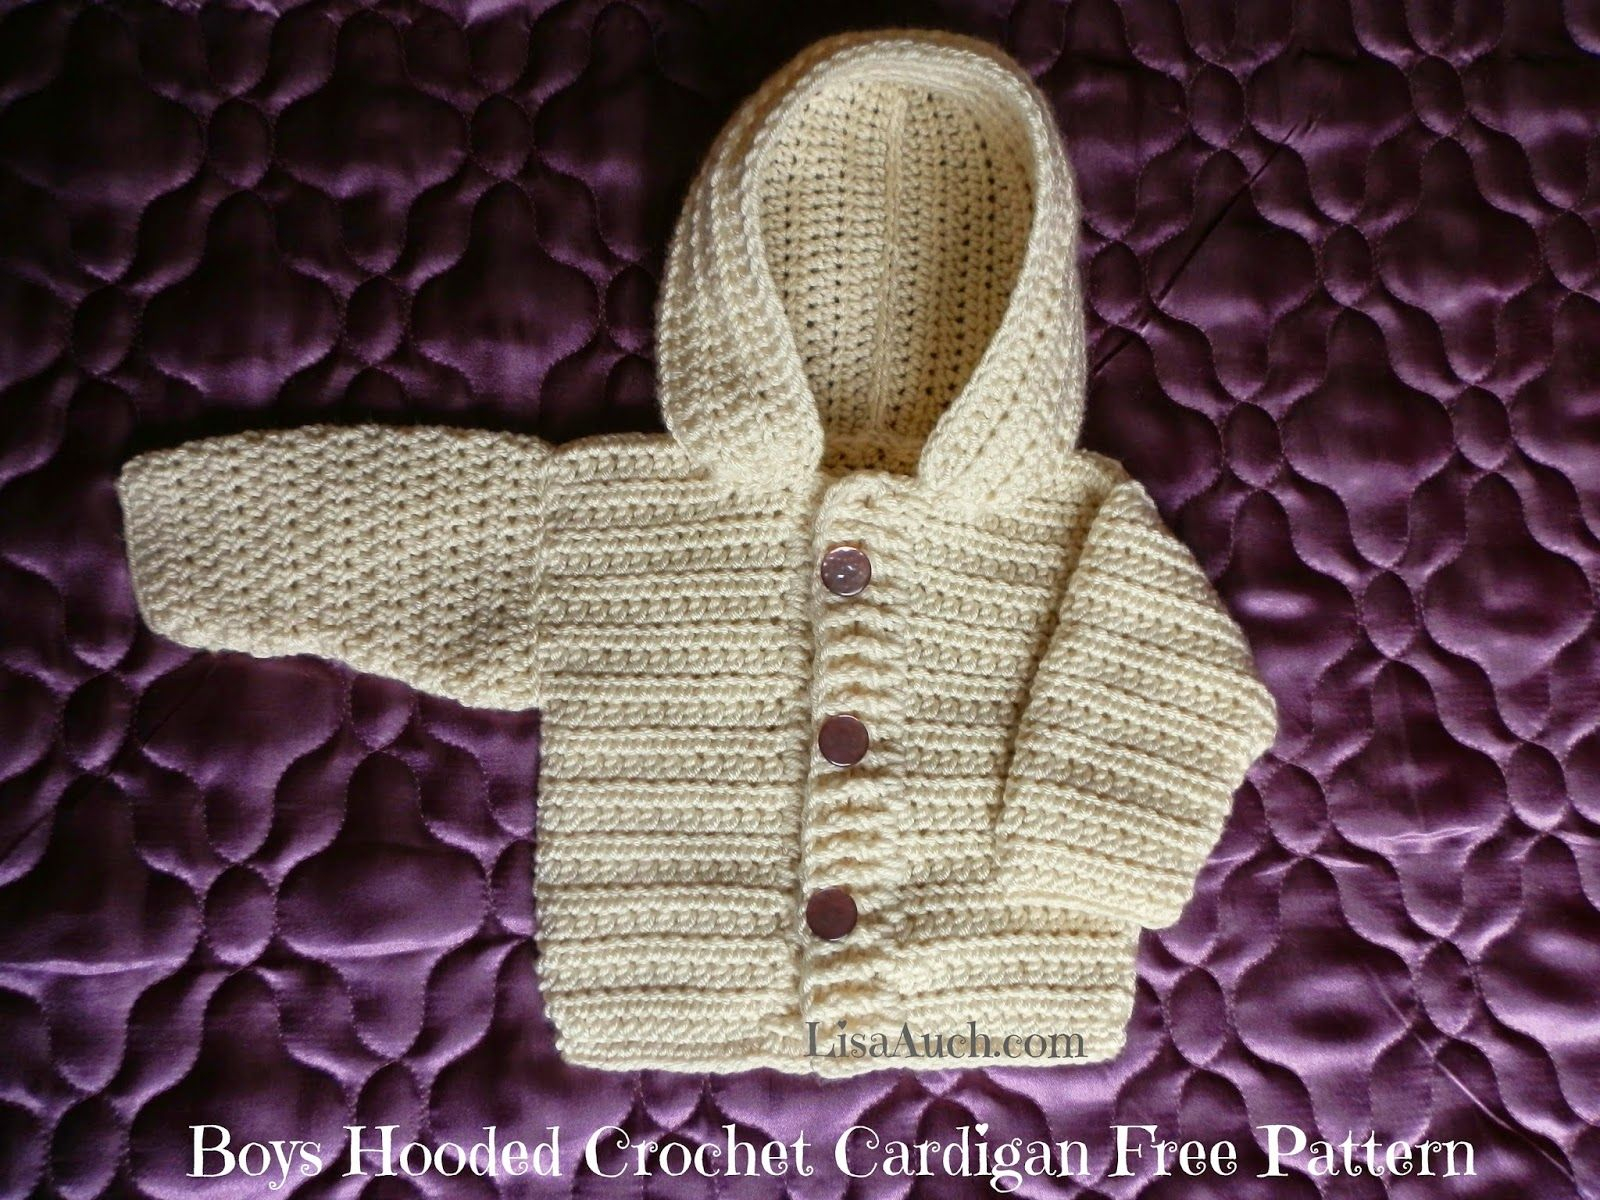 Free Baby Boy Crochet Patterns Crochet Ba Boy Cardigan Pattern With Hood Easy Hooded Crochet